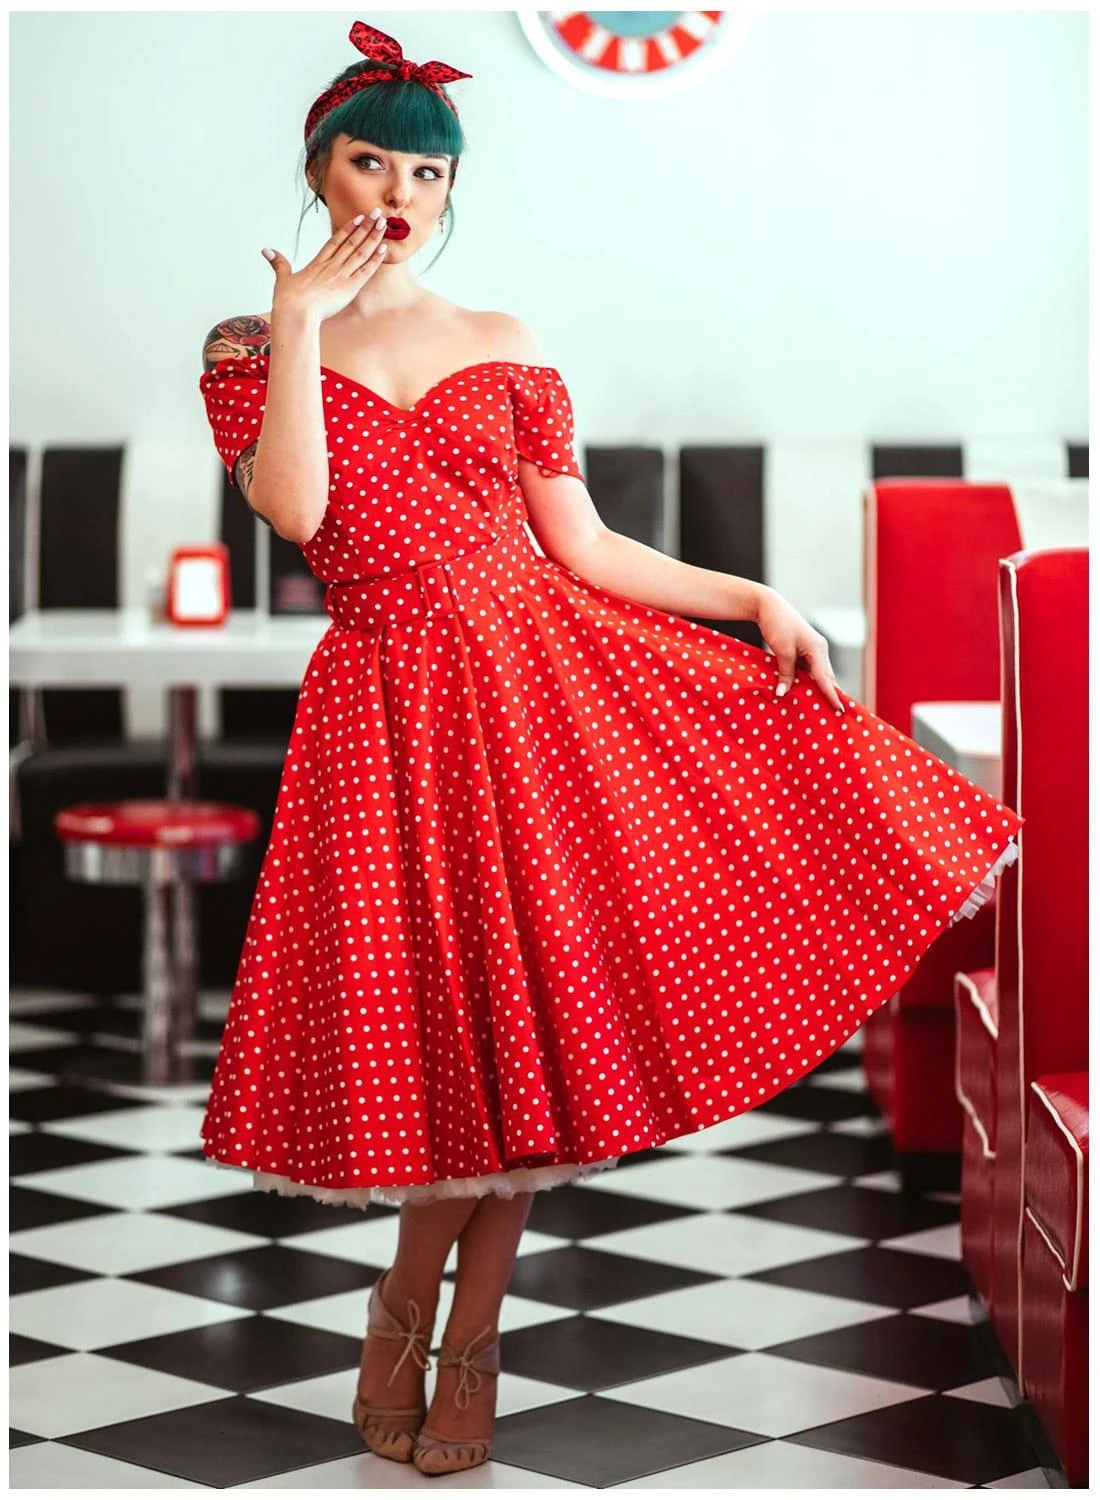 breed Ademen Vriend 30 zomer vrouwen vintage 50's polka dot cirkel swing jurk in rood plus size  jurken rockabilly vestidos pin up jurken|Jurken| - AliExpress